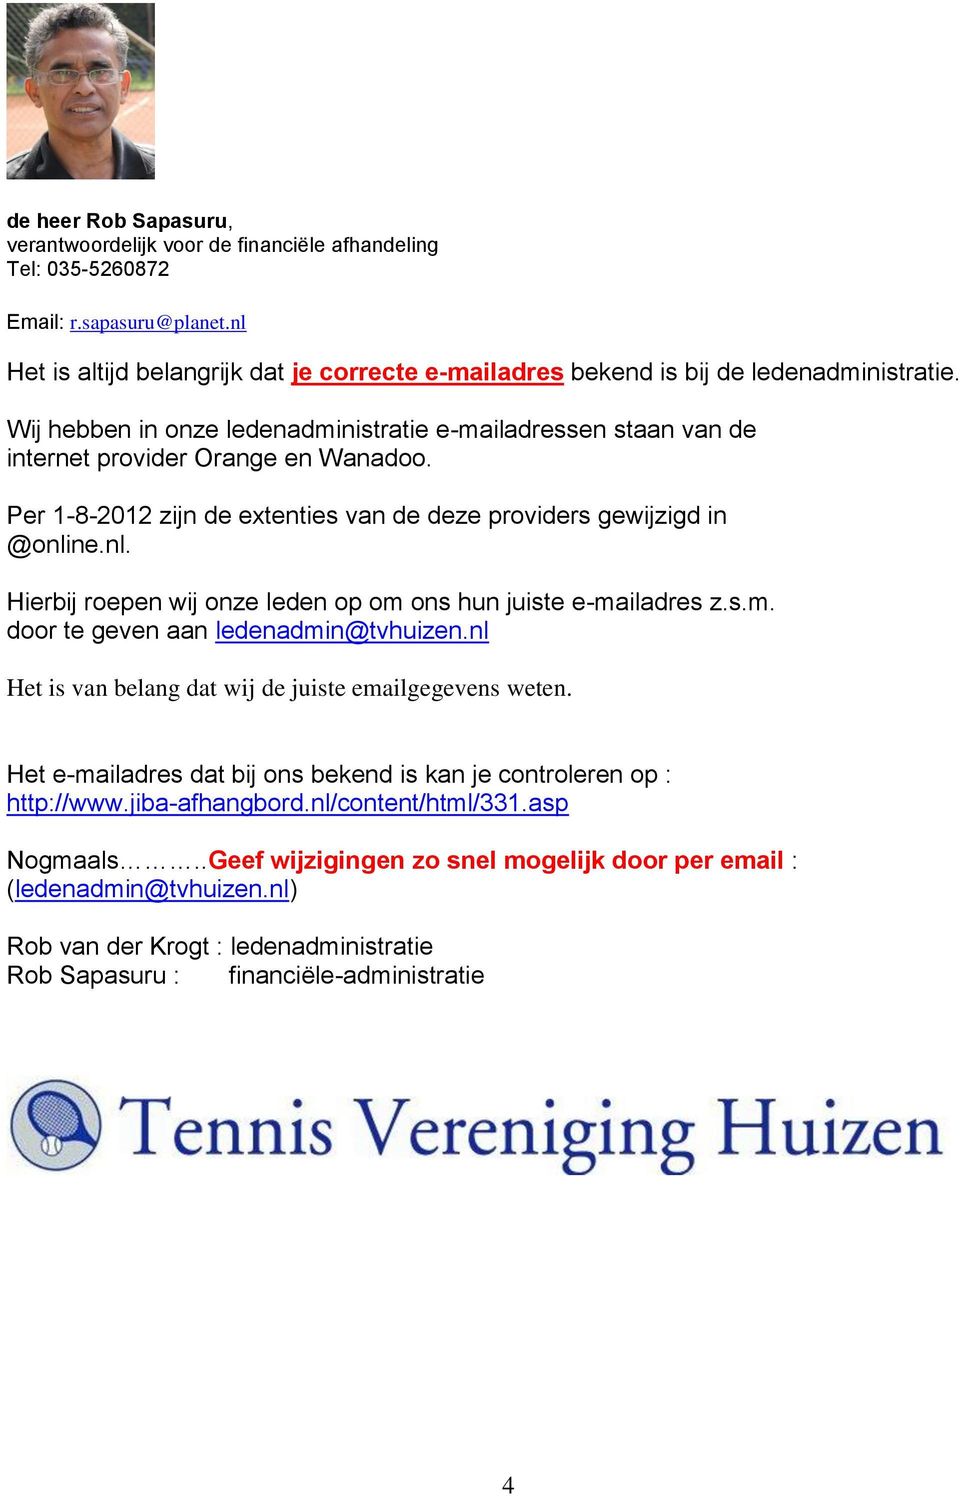 Per 1-8-2012 zijn de extenties van de deze providers gewijzigd in @online.nl. Hierbij roepen wij onze leden op om ons hun juiste e-mailadres z.s.m. door te geven aan ledenadmin@tvhuizen.